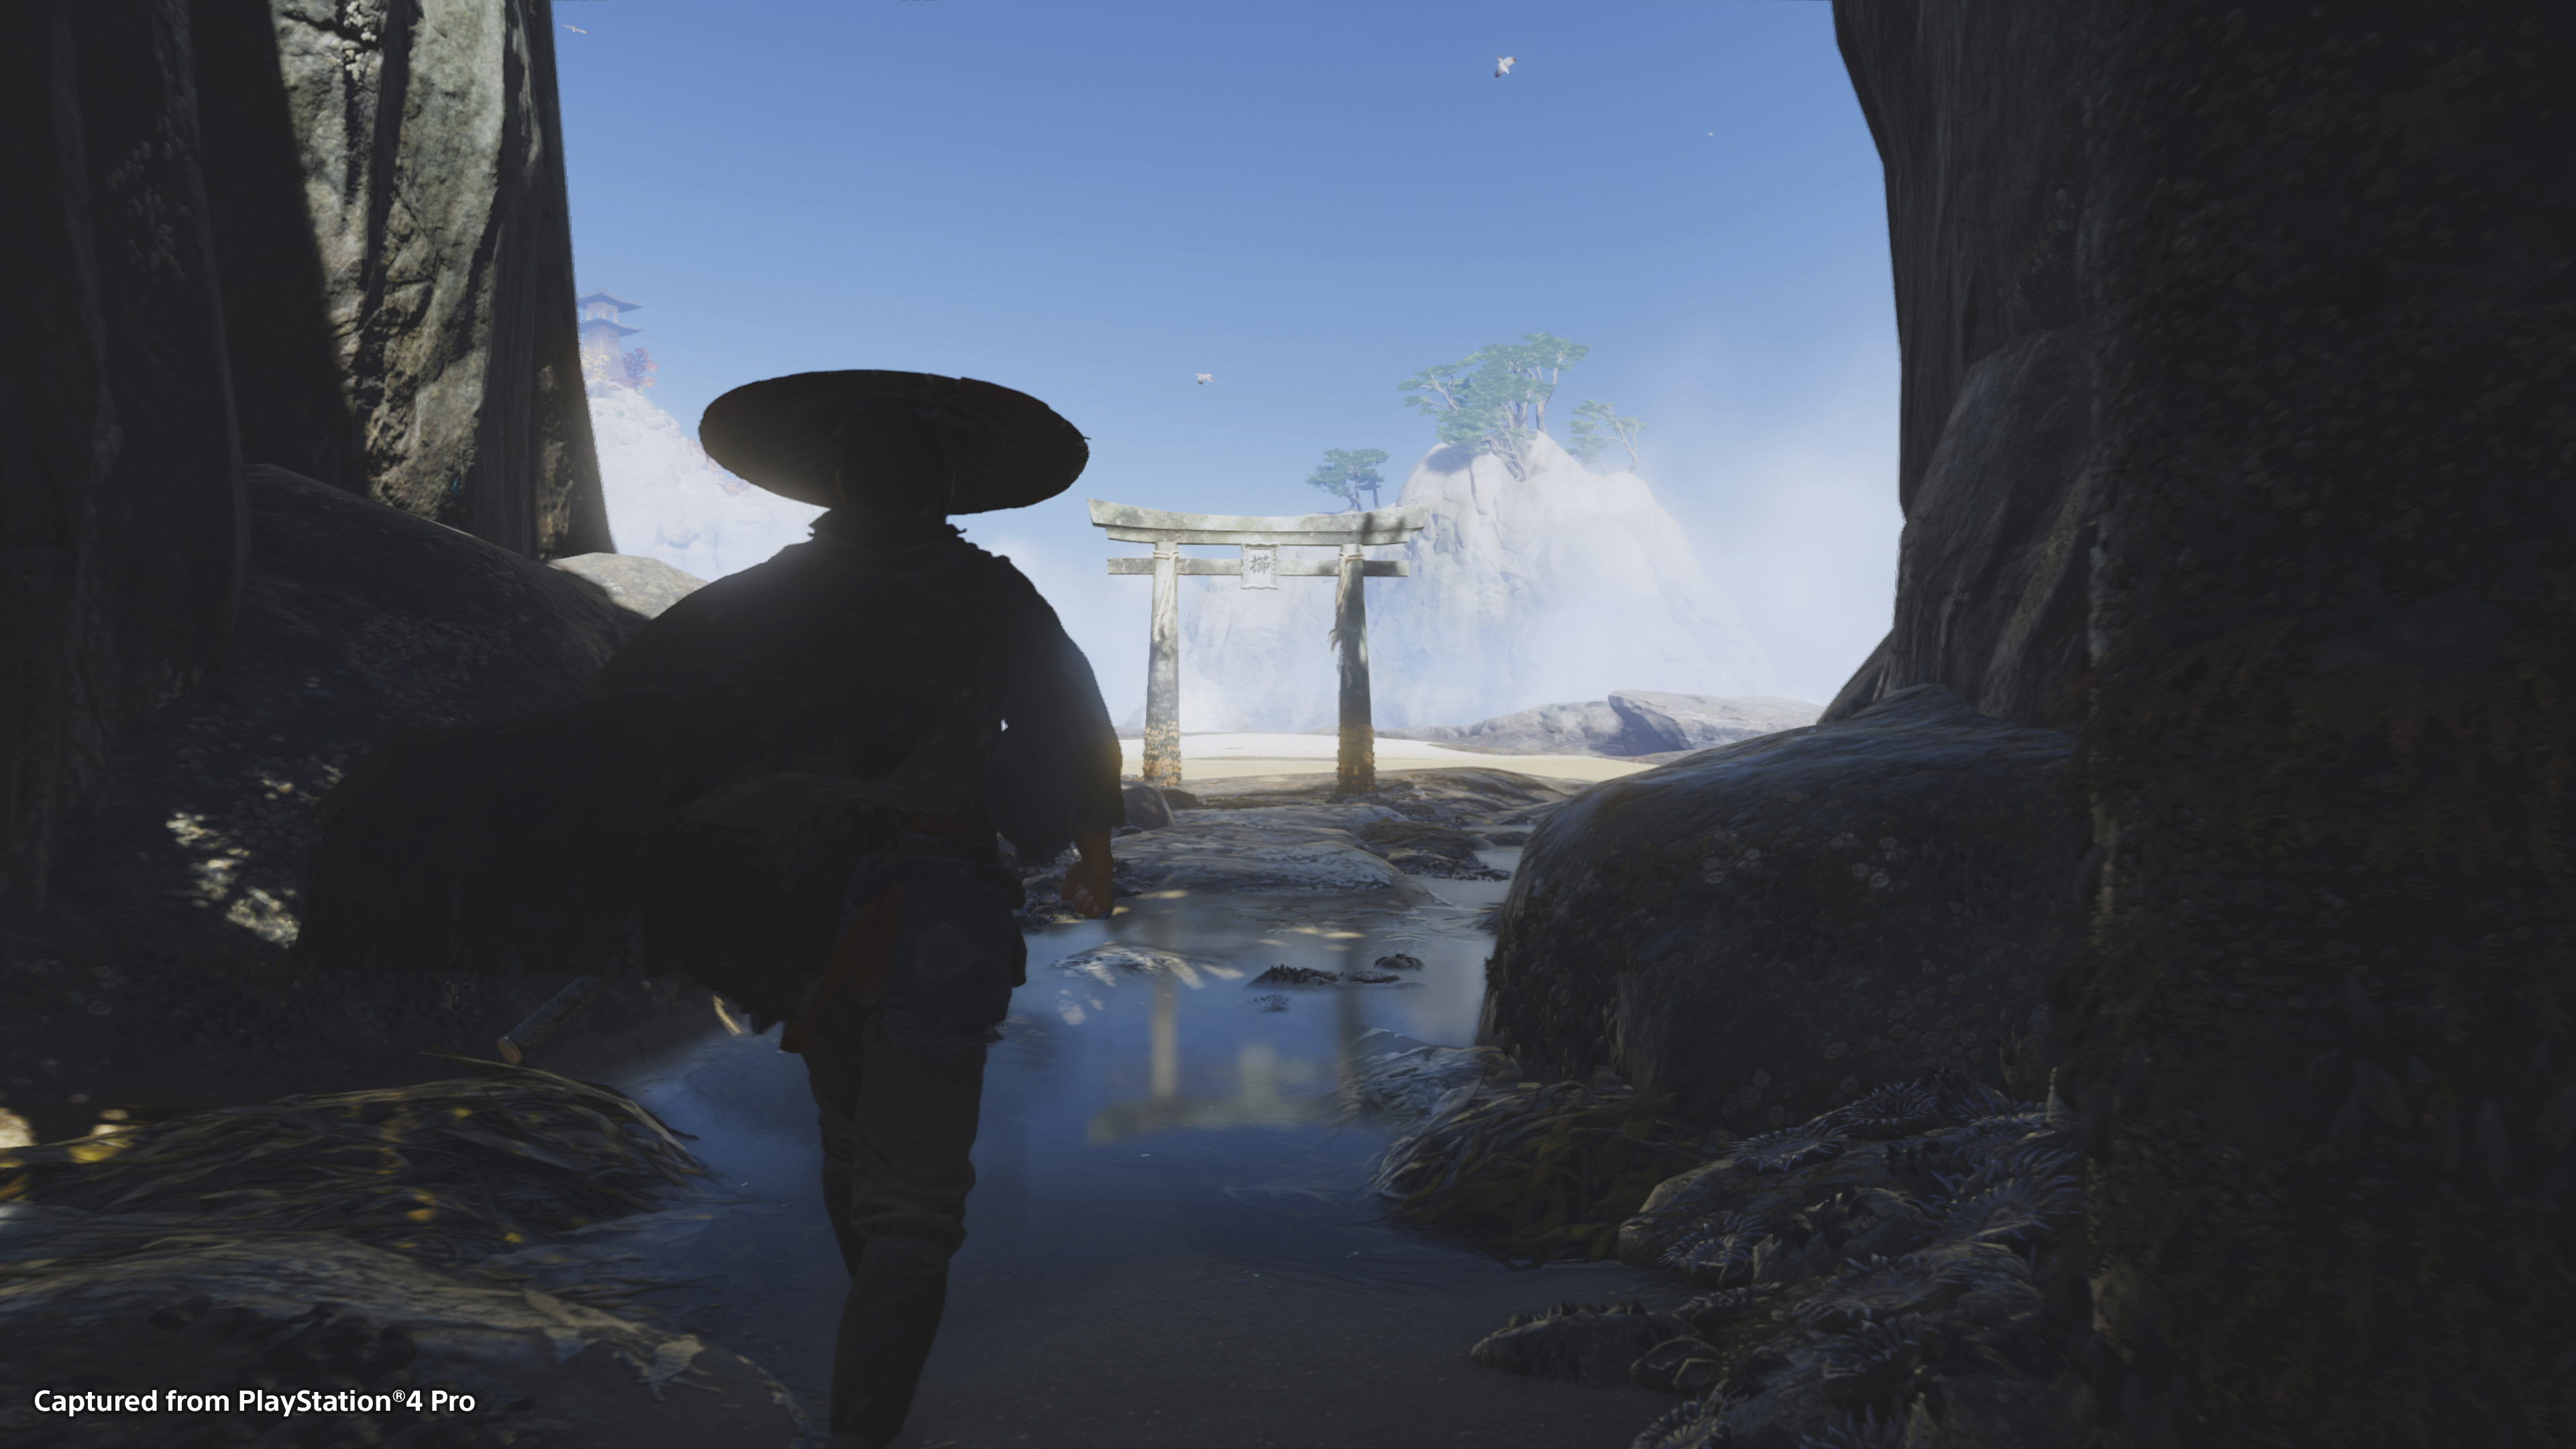 Ghost of Tsushima στιγμιότυπο παιχνιδιού που απεικονίζει τη σιλουέτα του βασικού χαρακτήρα, Τζιν Σακάι, σε φωτεινό μπλε ουρανό.